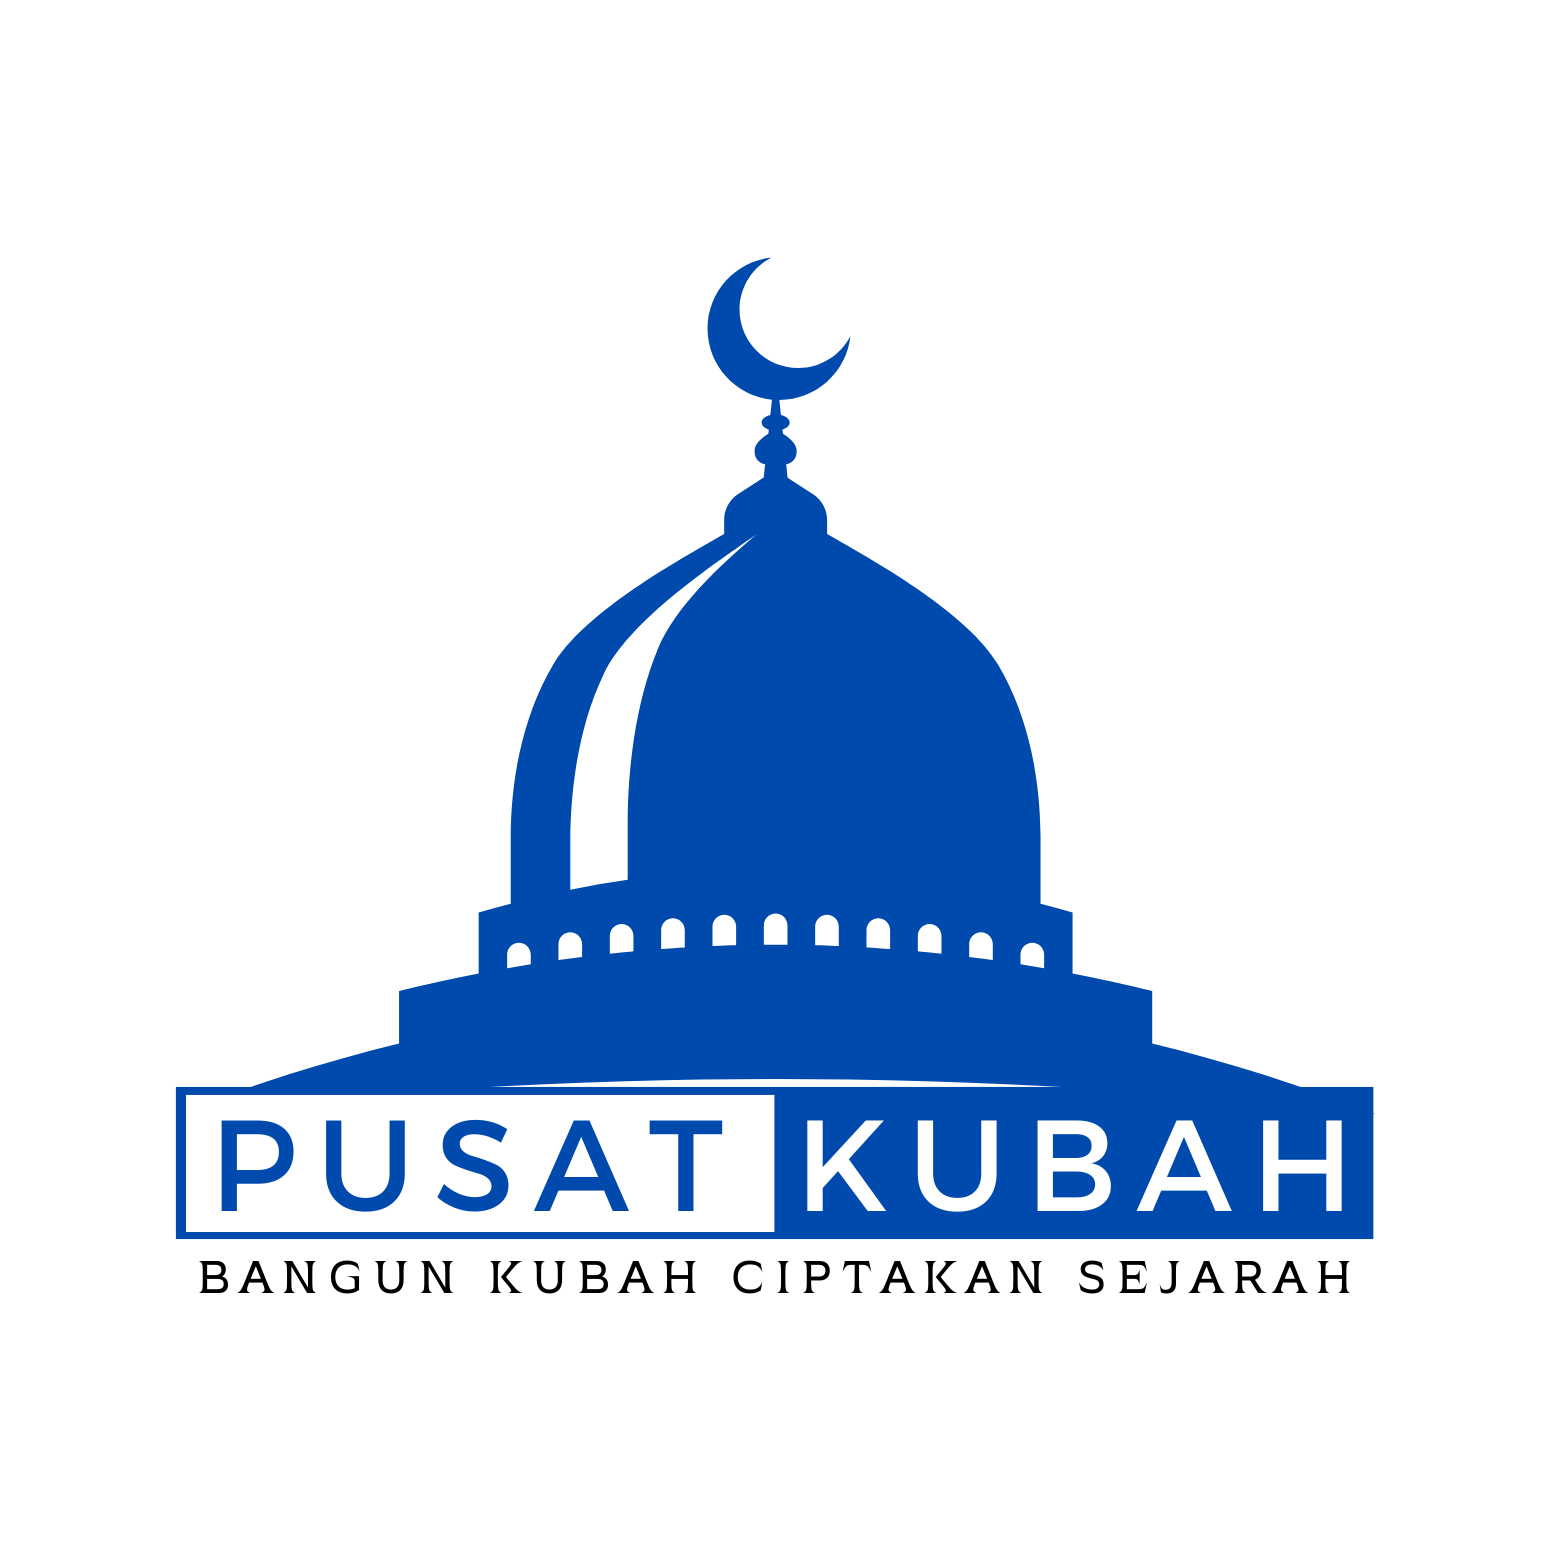 PUSAT KUBAH INDONESIA